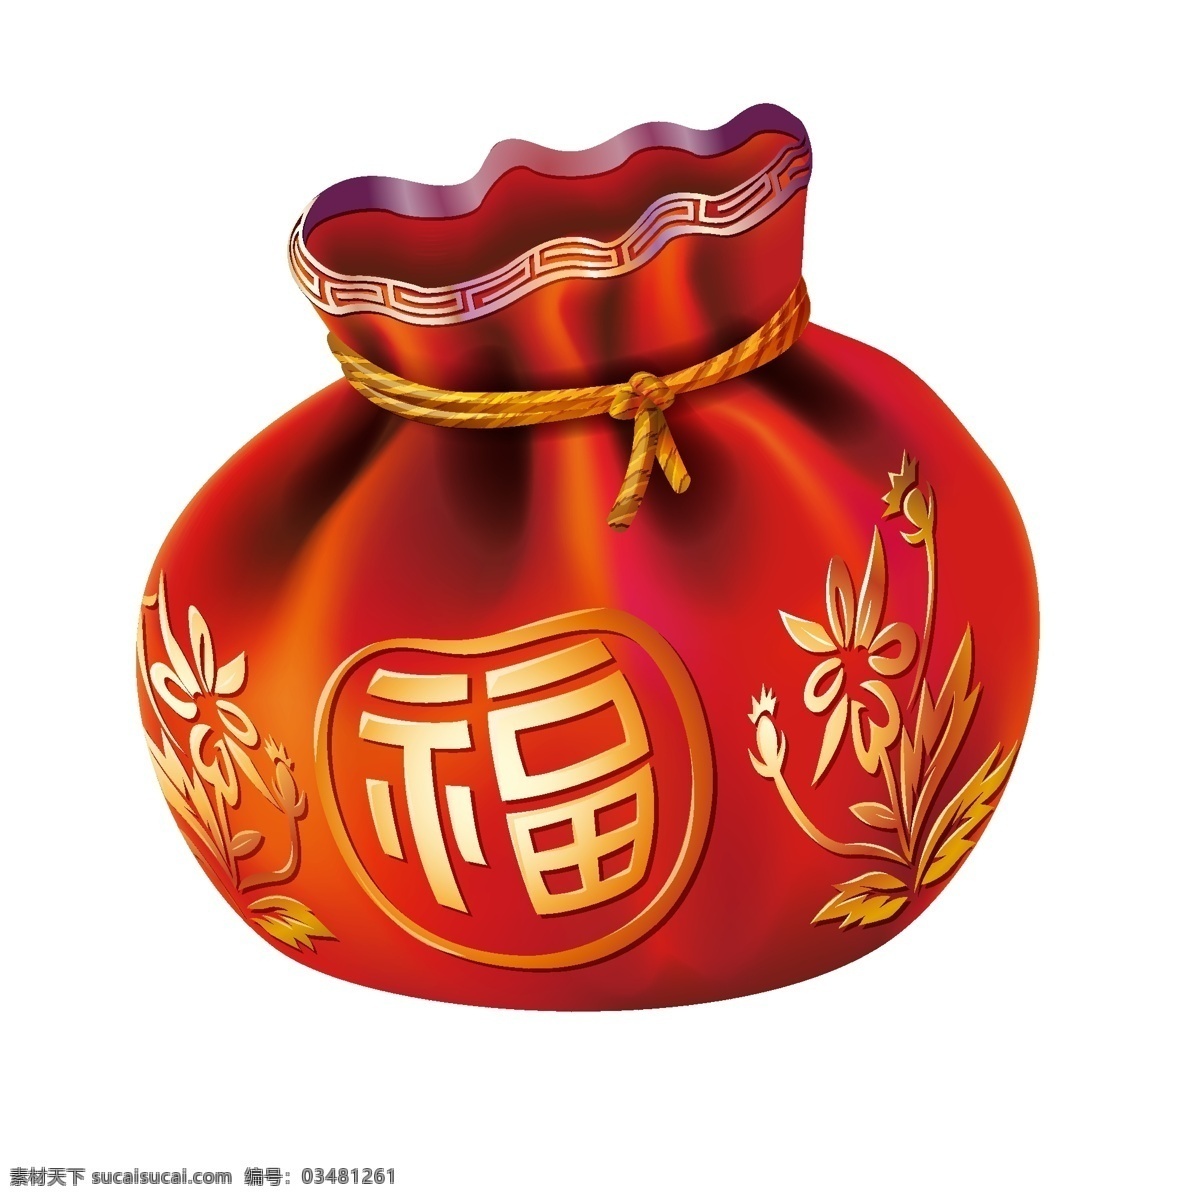 立体 红色 福 袋 立体红色福袋 福袋 新年 春节 传统节日 立体化